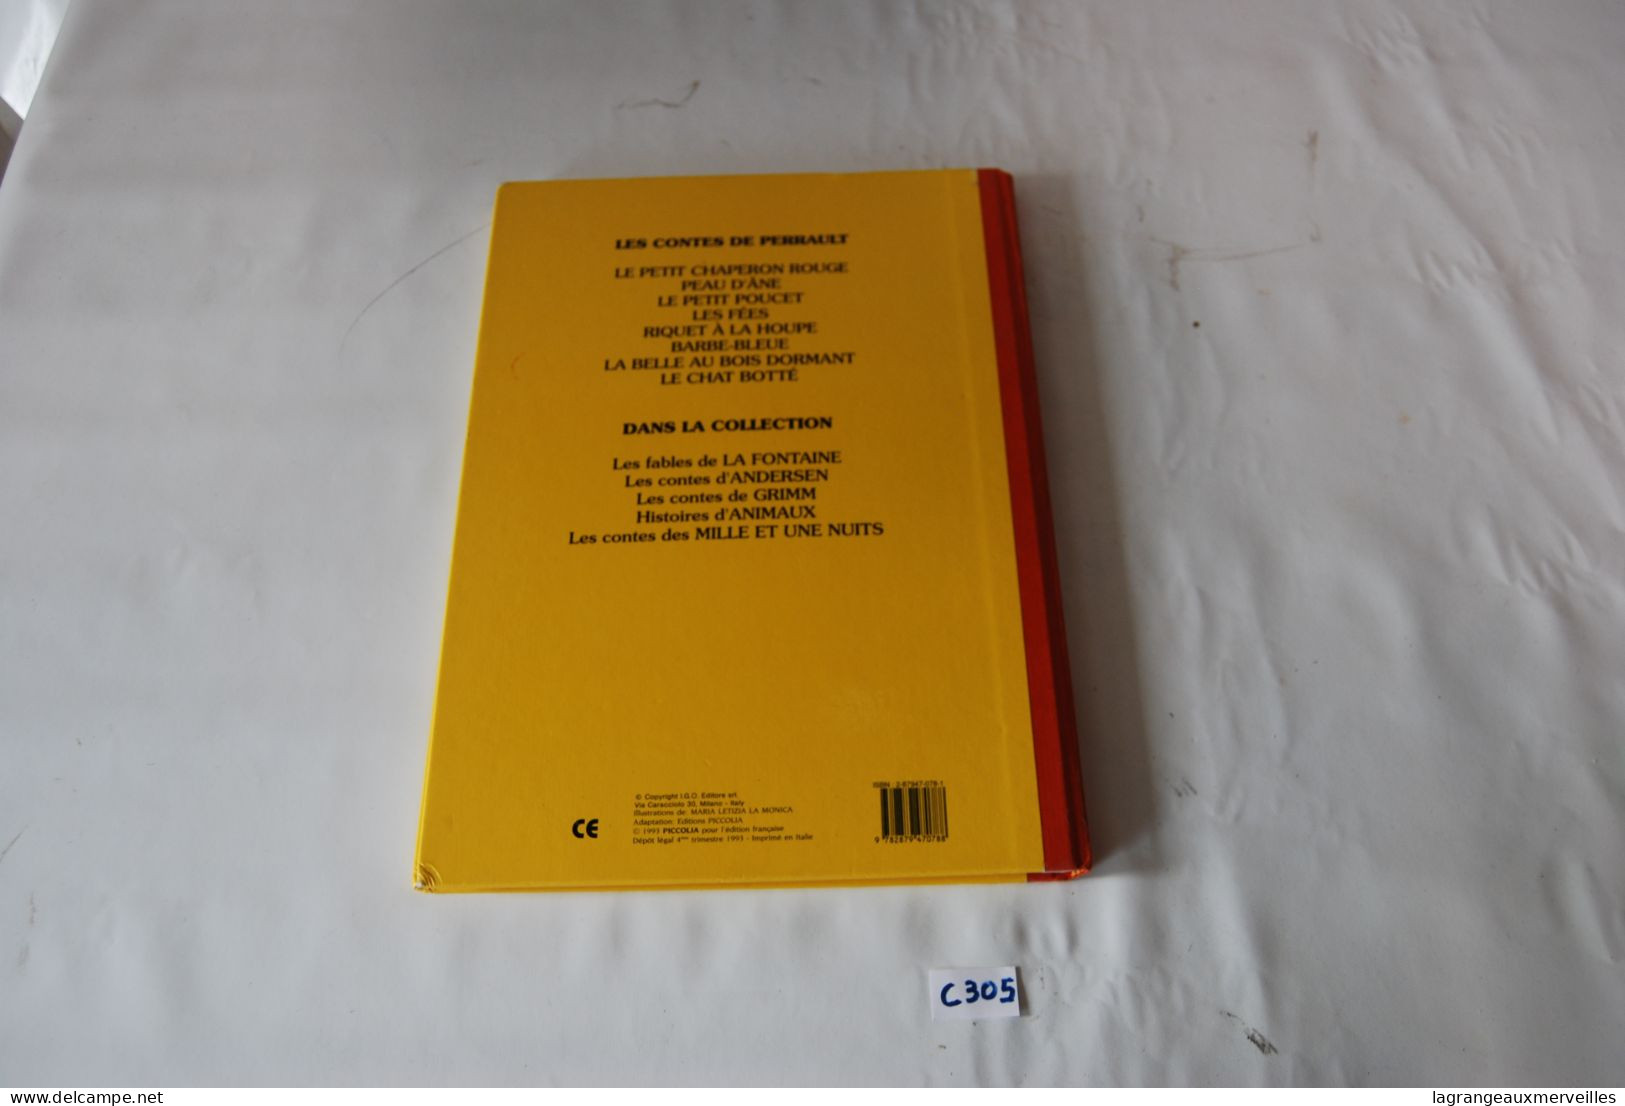 C305 Livre - les contes de Perrault - Ed Piccolia - 1993